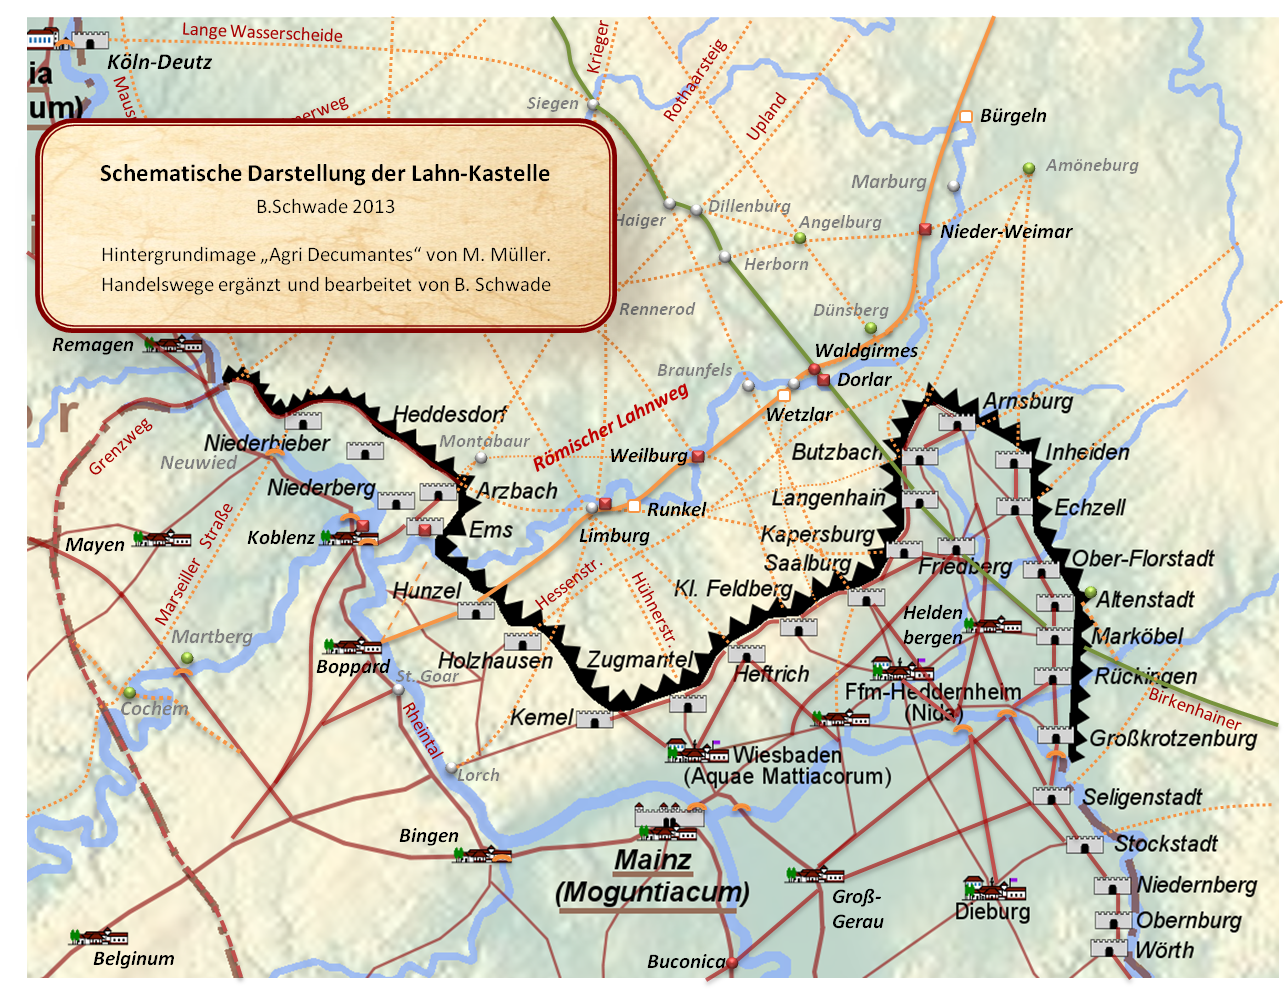 Der rmische Lahnweg verband die Lahn-Kastelle in Boppard, Hunzel, Limburg, Weilburg, Dorlar und Nieder-Weimar und
		wurde in der Hhe des rmischen Forums Waldgirmes von einem wichtigen vorrmischen Fernweg, der die Donau mit dem Rhein verband, gekreuzt.